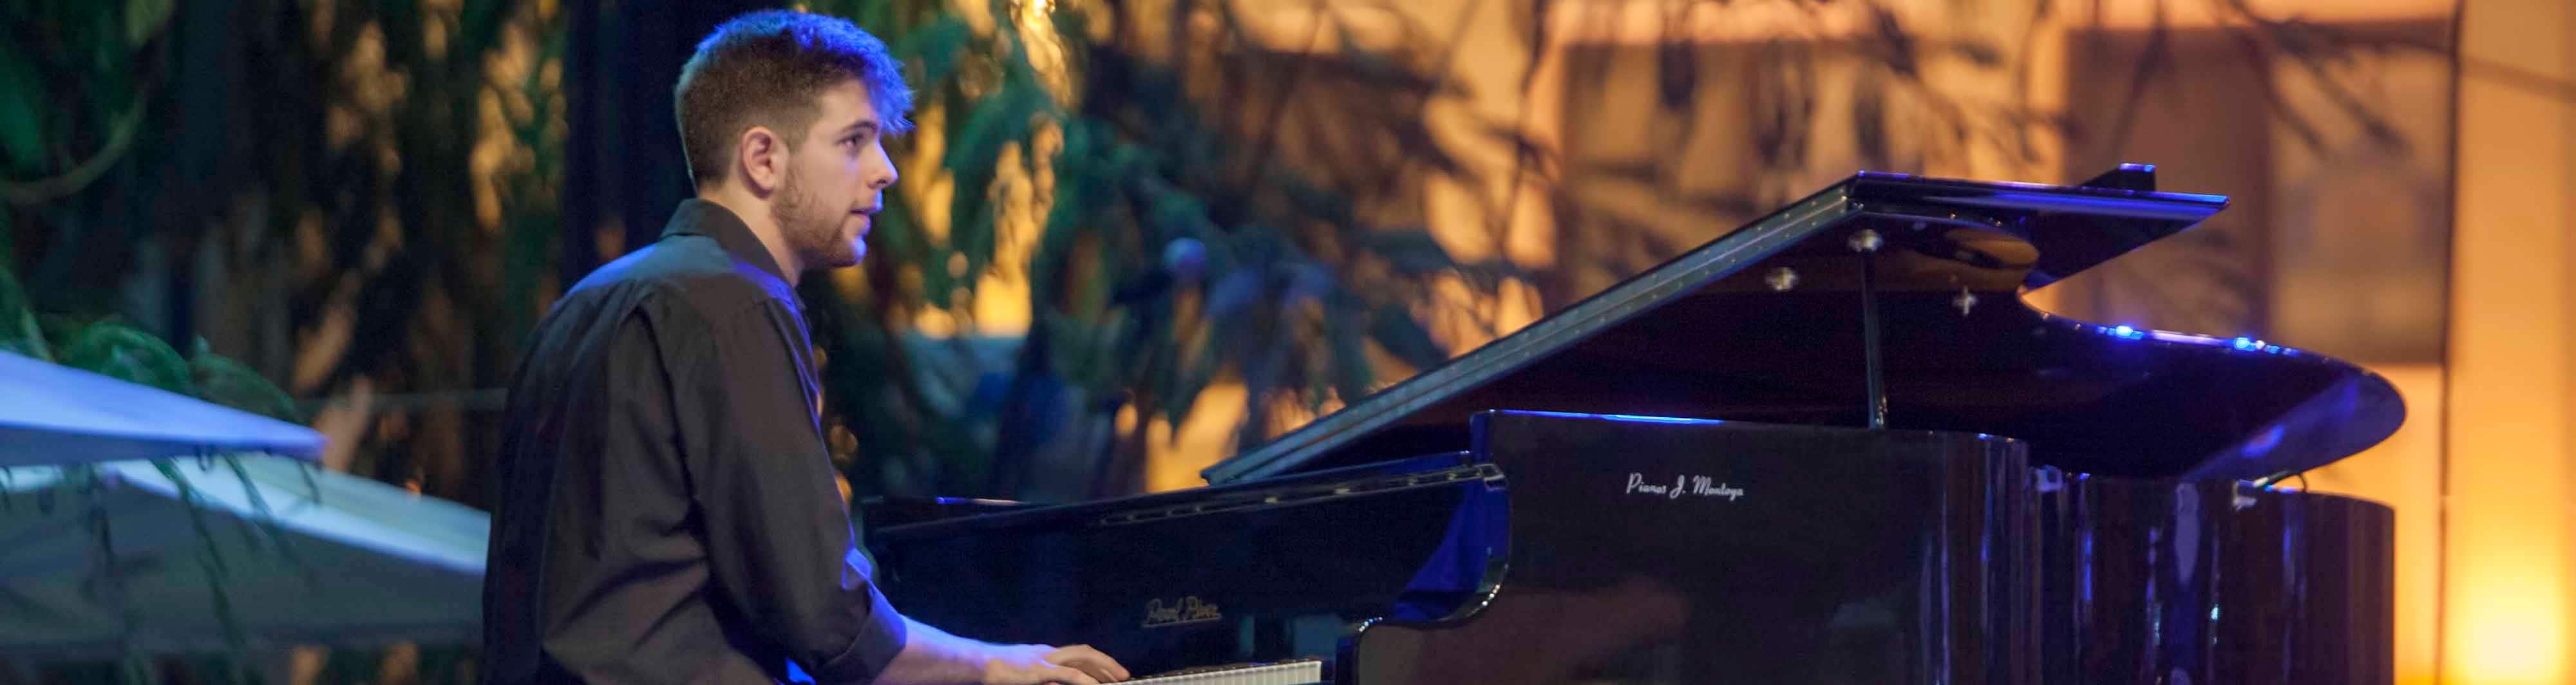 El utrerano Andrés Barrios es un enamorado del mundo del piano